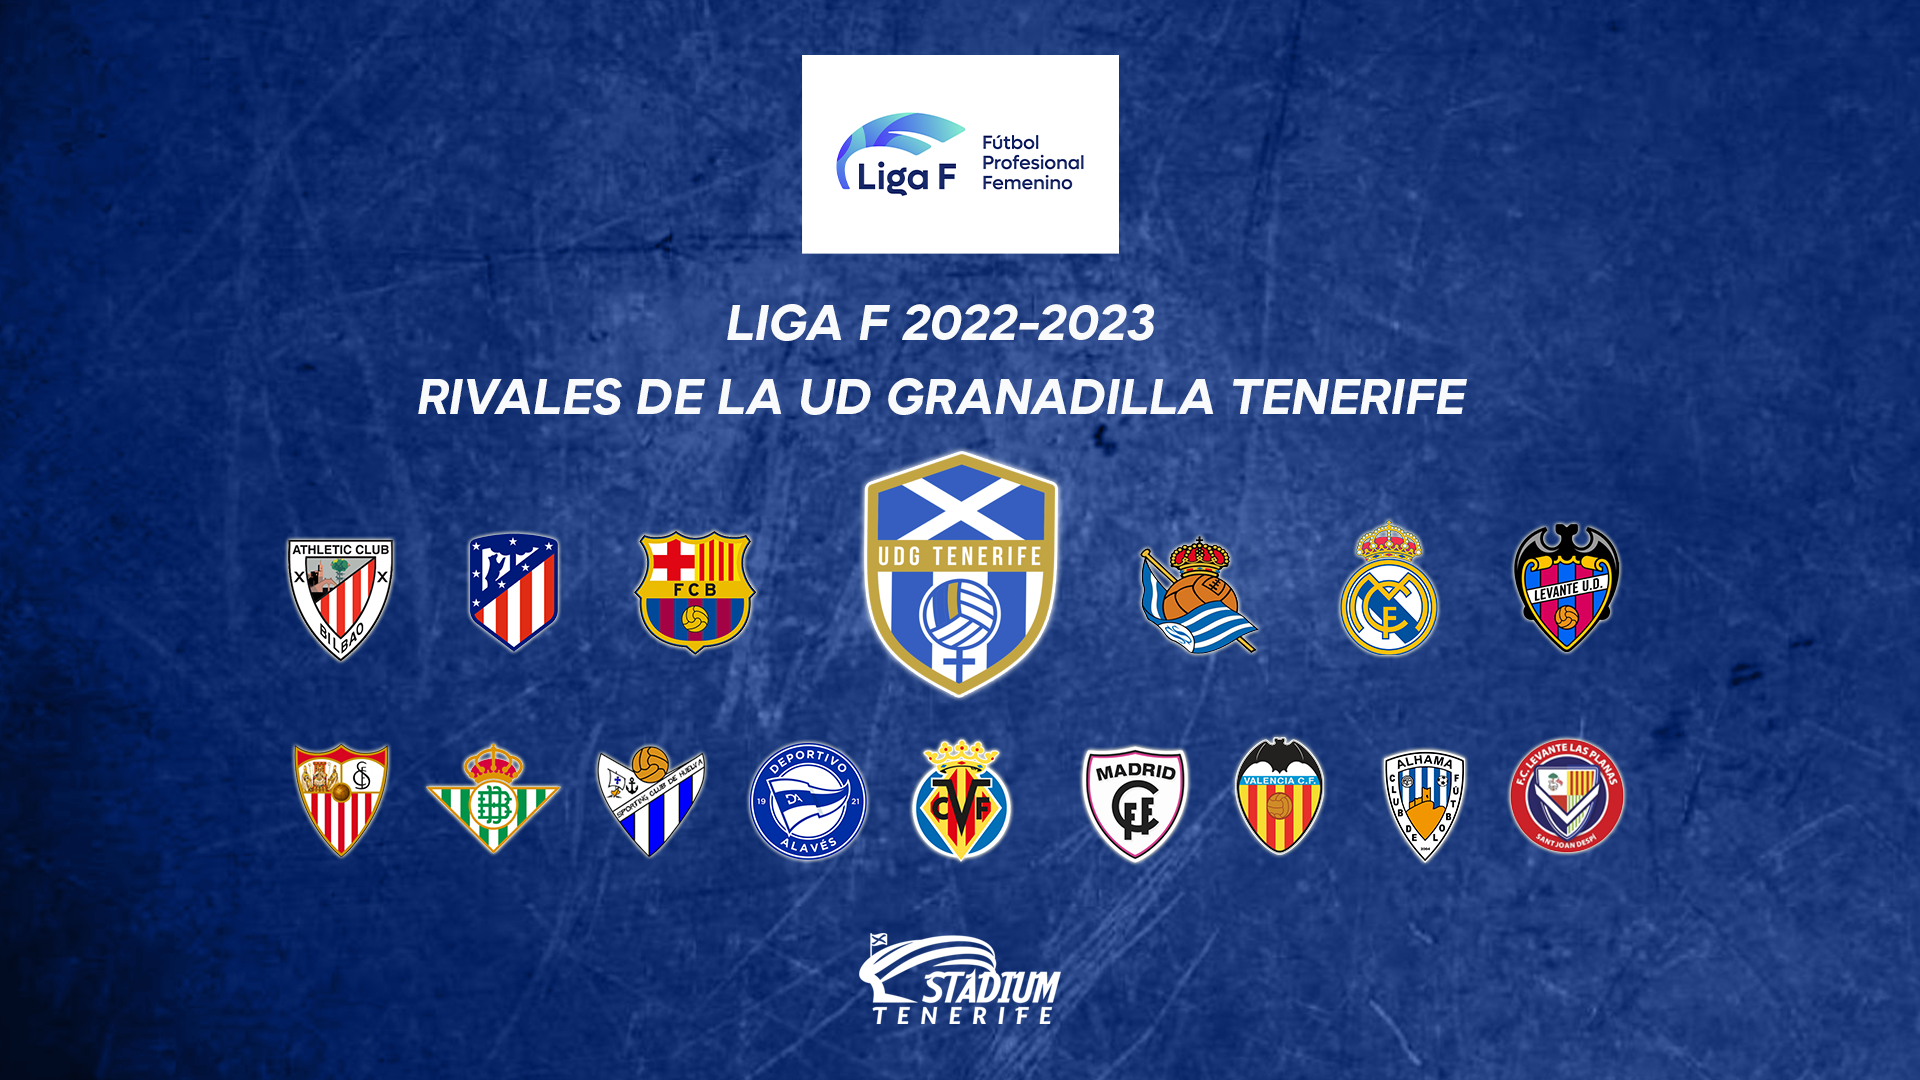 Los 15 equipos que serán rivales de la UDG Tenerife en la temporada 2022-2023